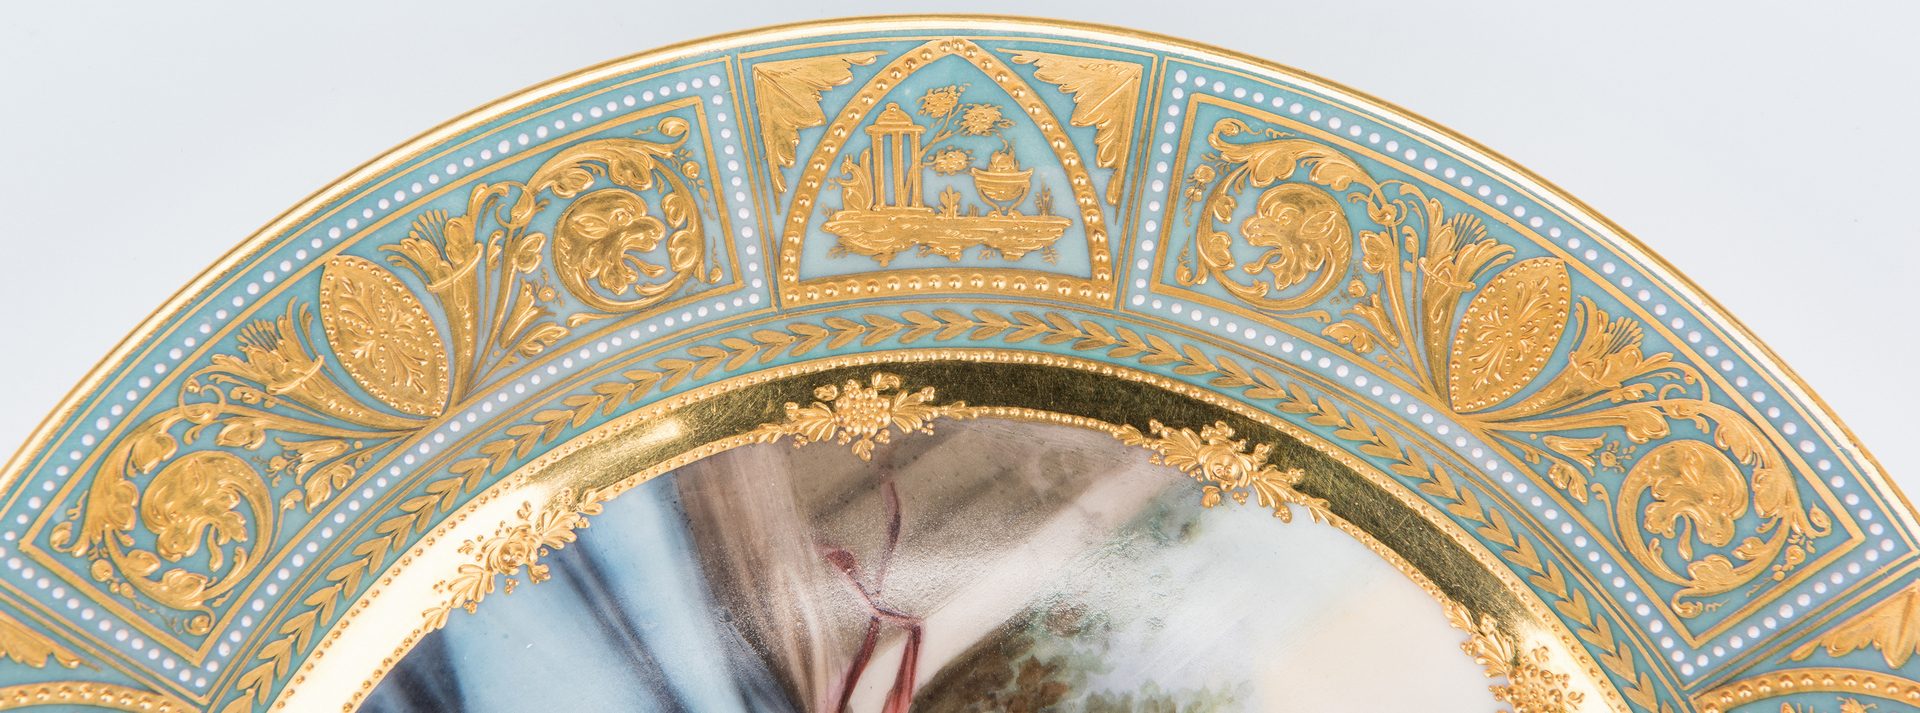 Lot 223: Royal Vienna Porcelain Cabinet Plate signed Wagner, "Taste"